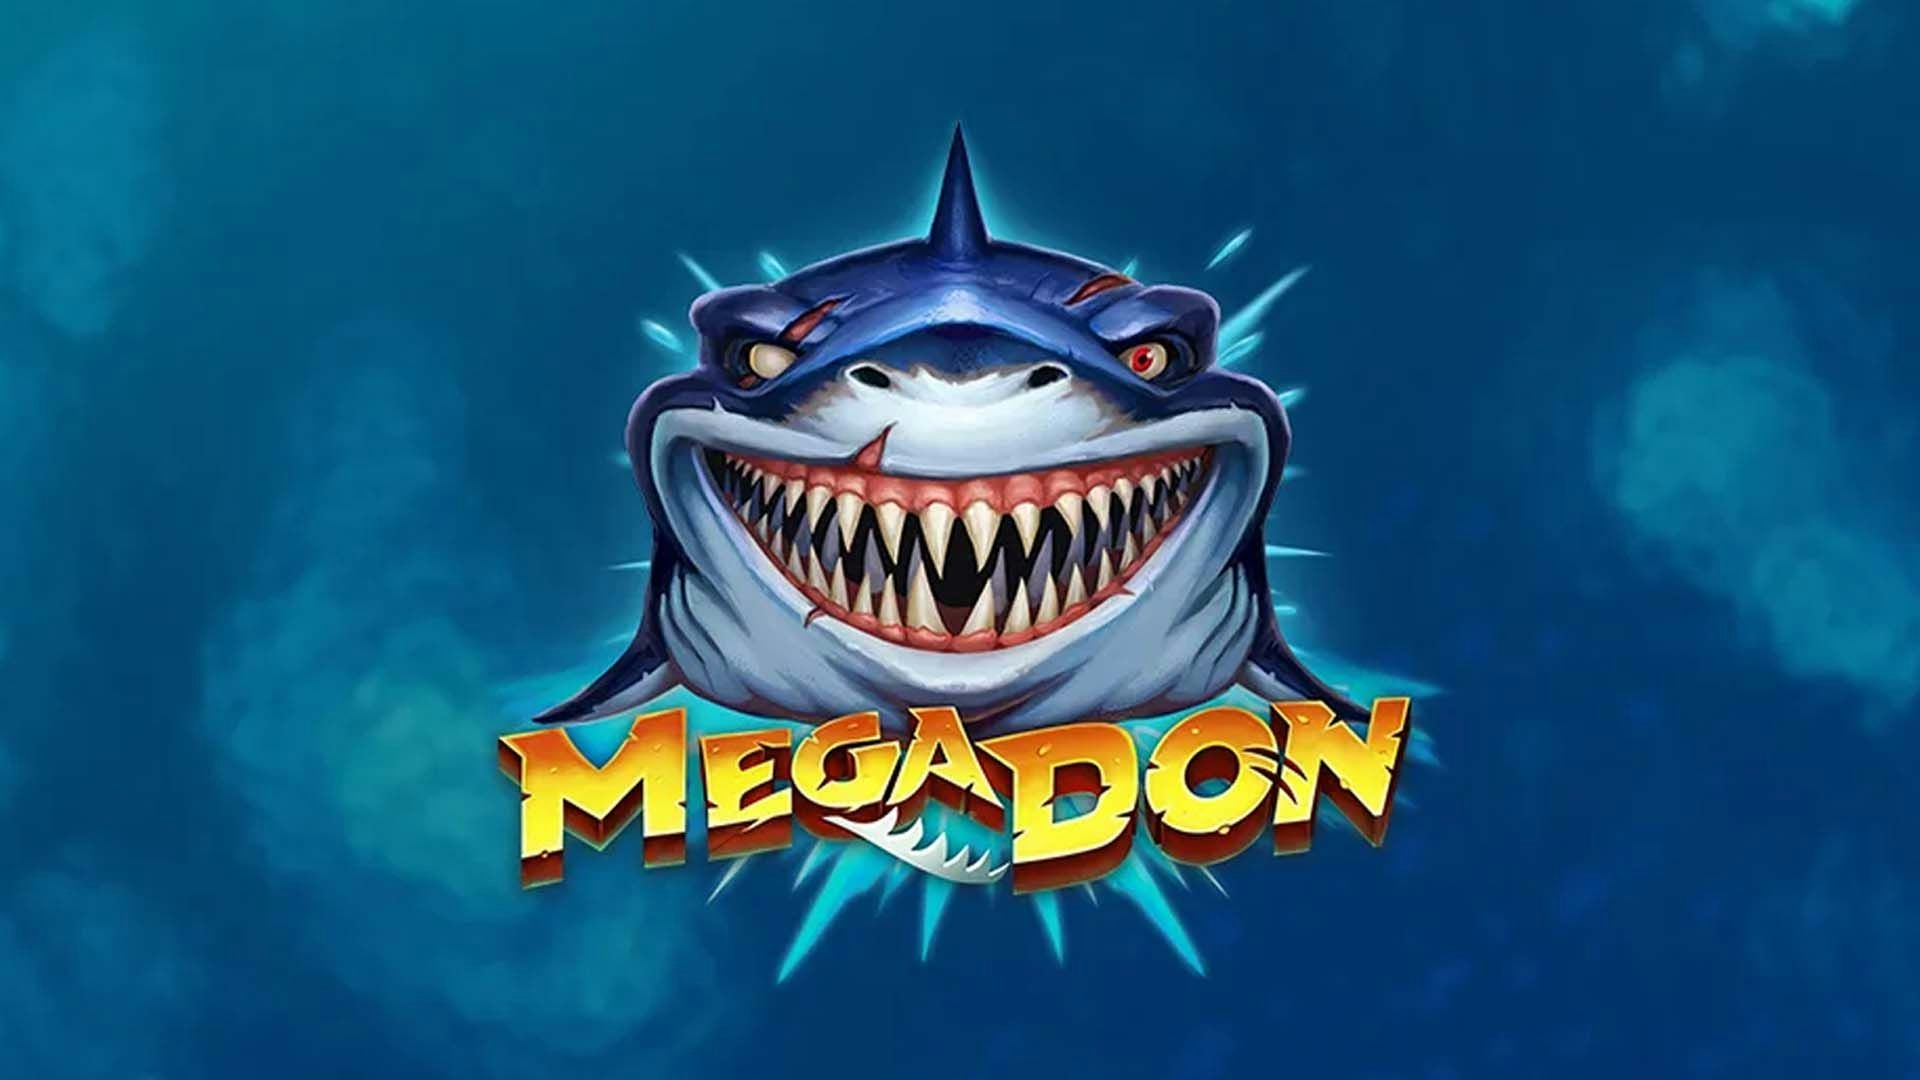 Mega Don